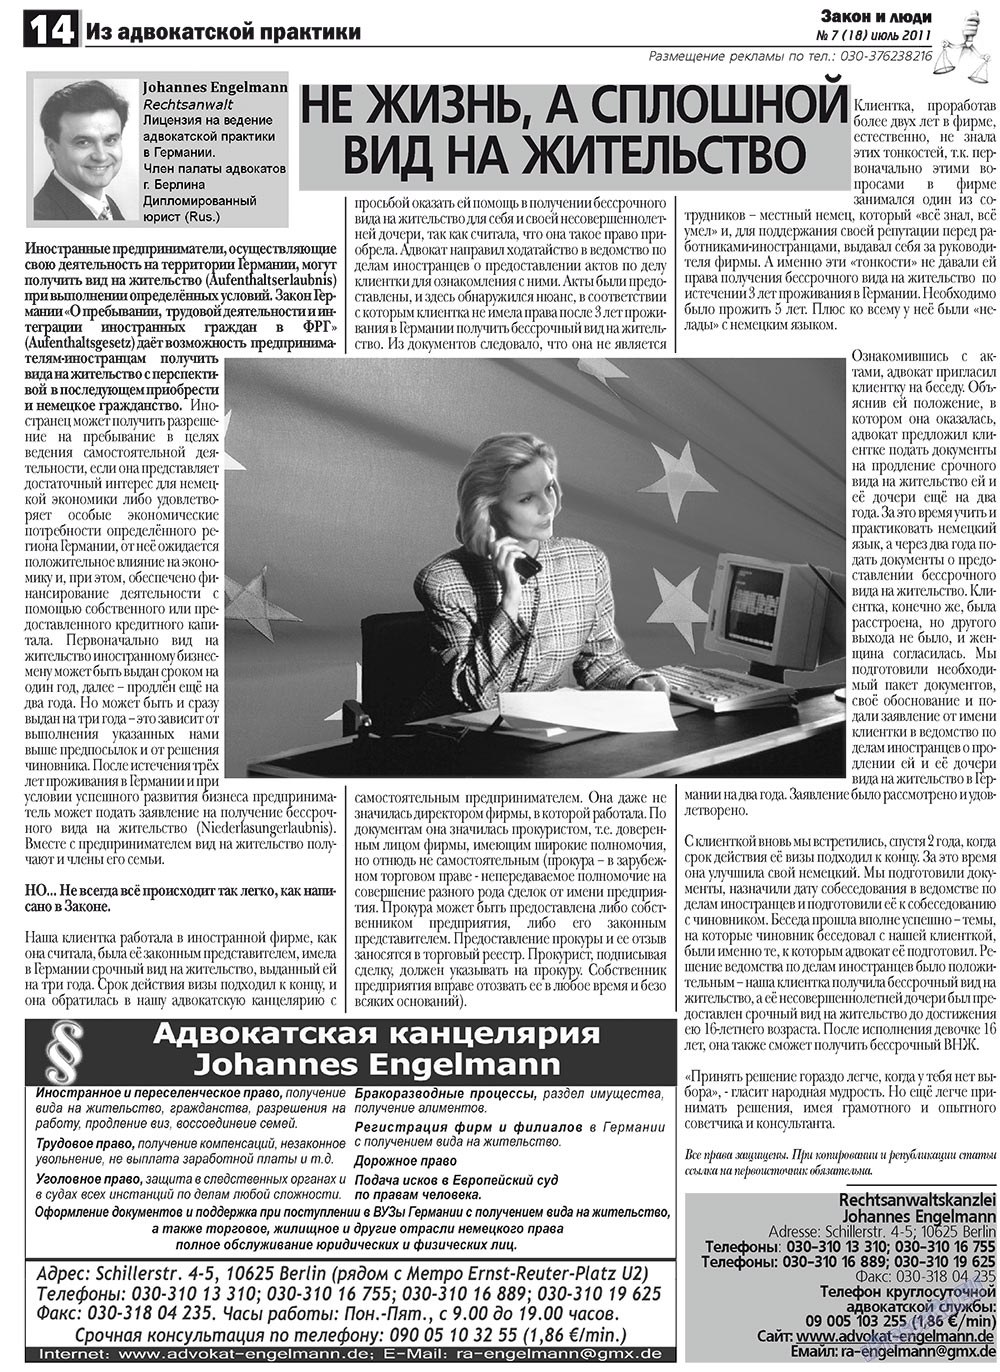 Закон и люди, газета. 2011 №7 стр.14